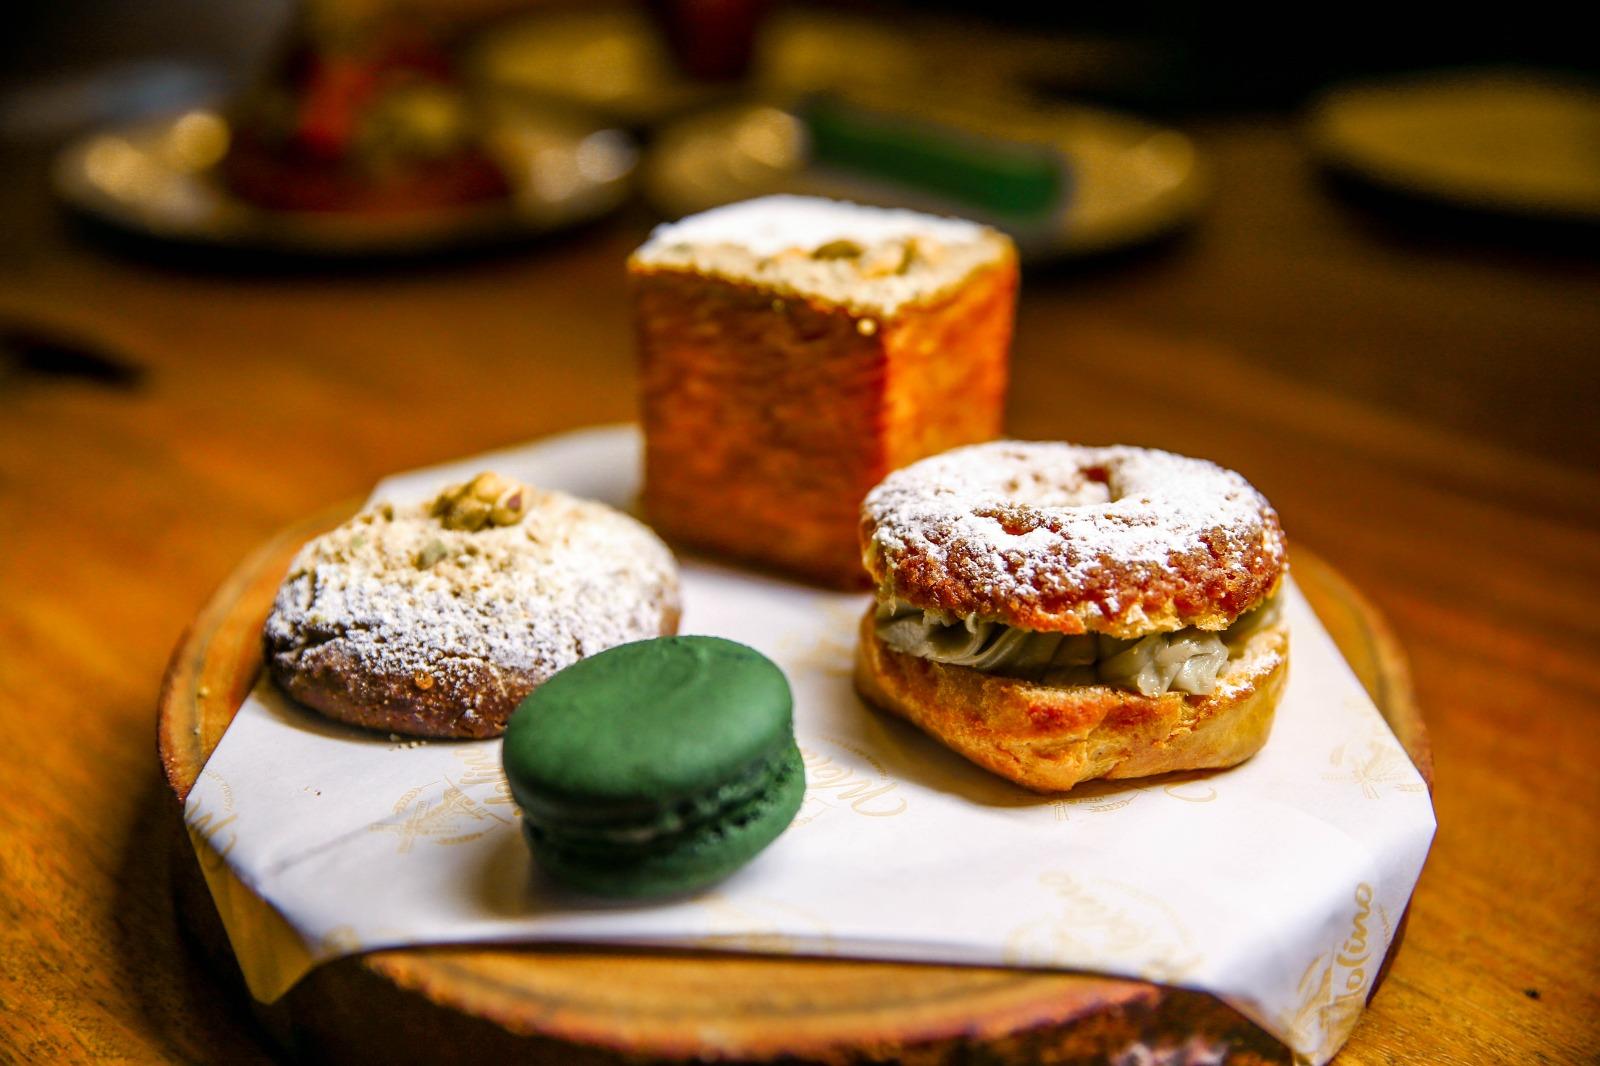 Padaria artesanal tem diversas opções de doces com pistache, como o Kouign-amann, o Paris-brest, cookies e macarons